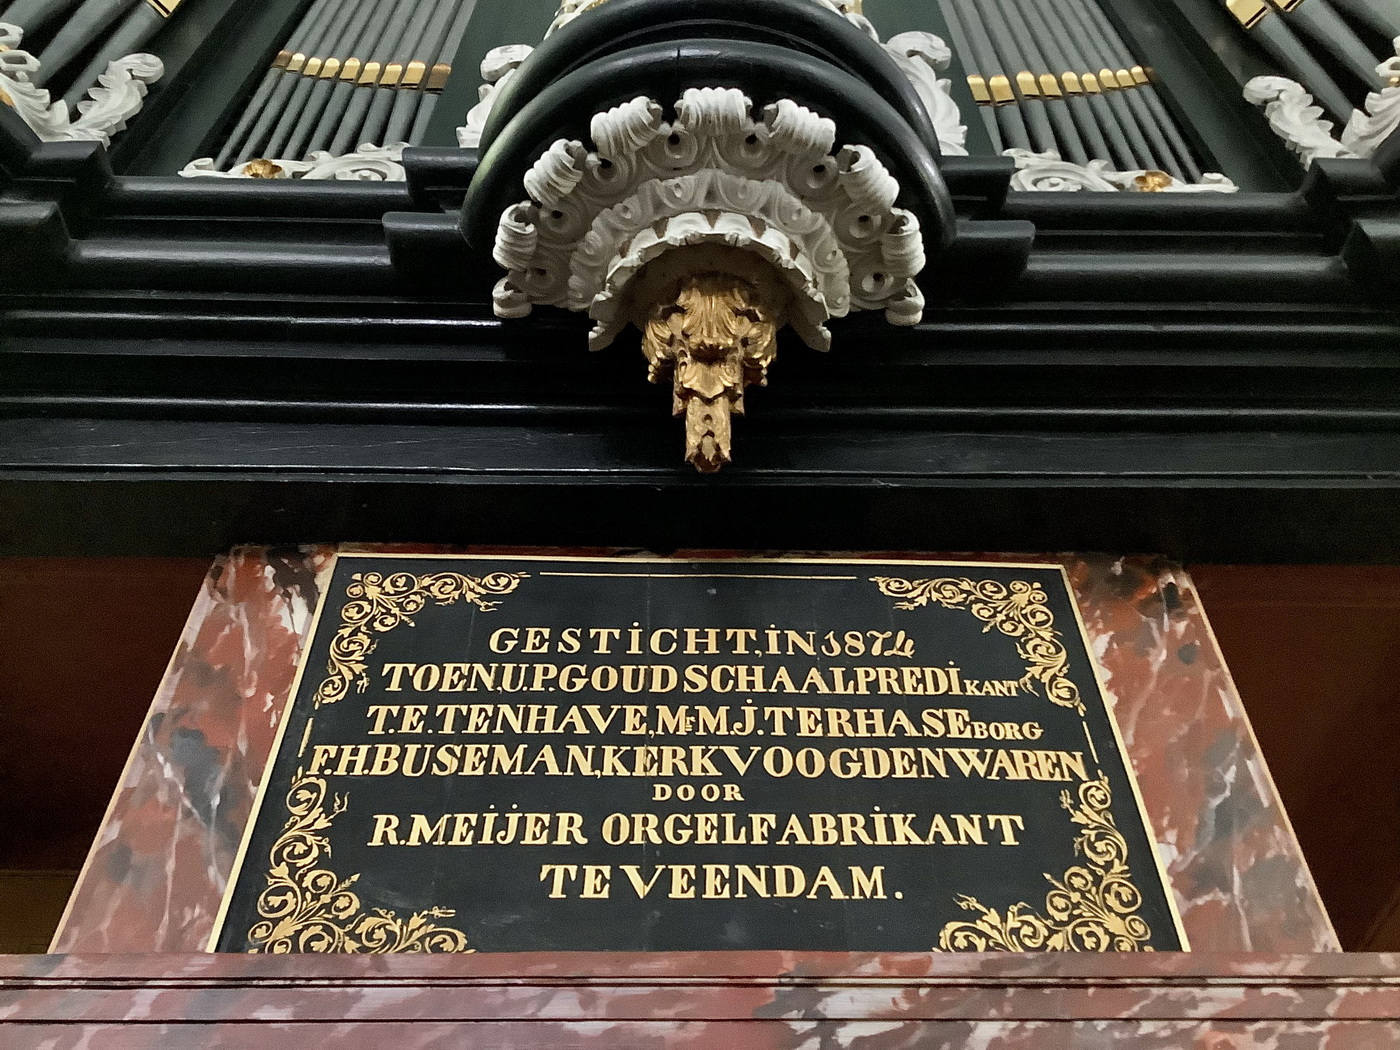 Tekstbord onder het orgel met de tekst: 'Gesticht in 1874 toen U.P. Goudschaal predikant, T.E. Ten Have, E.M.J. ter Haseborg, F.HJ. Buseman, kerkvoogden waren, door R. Meijer Orgelfabrikant te Veendam'.